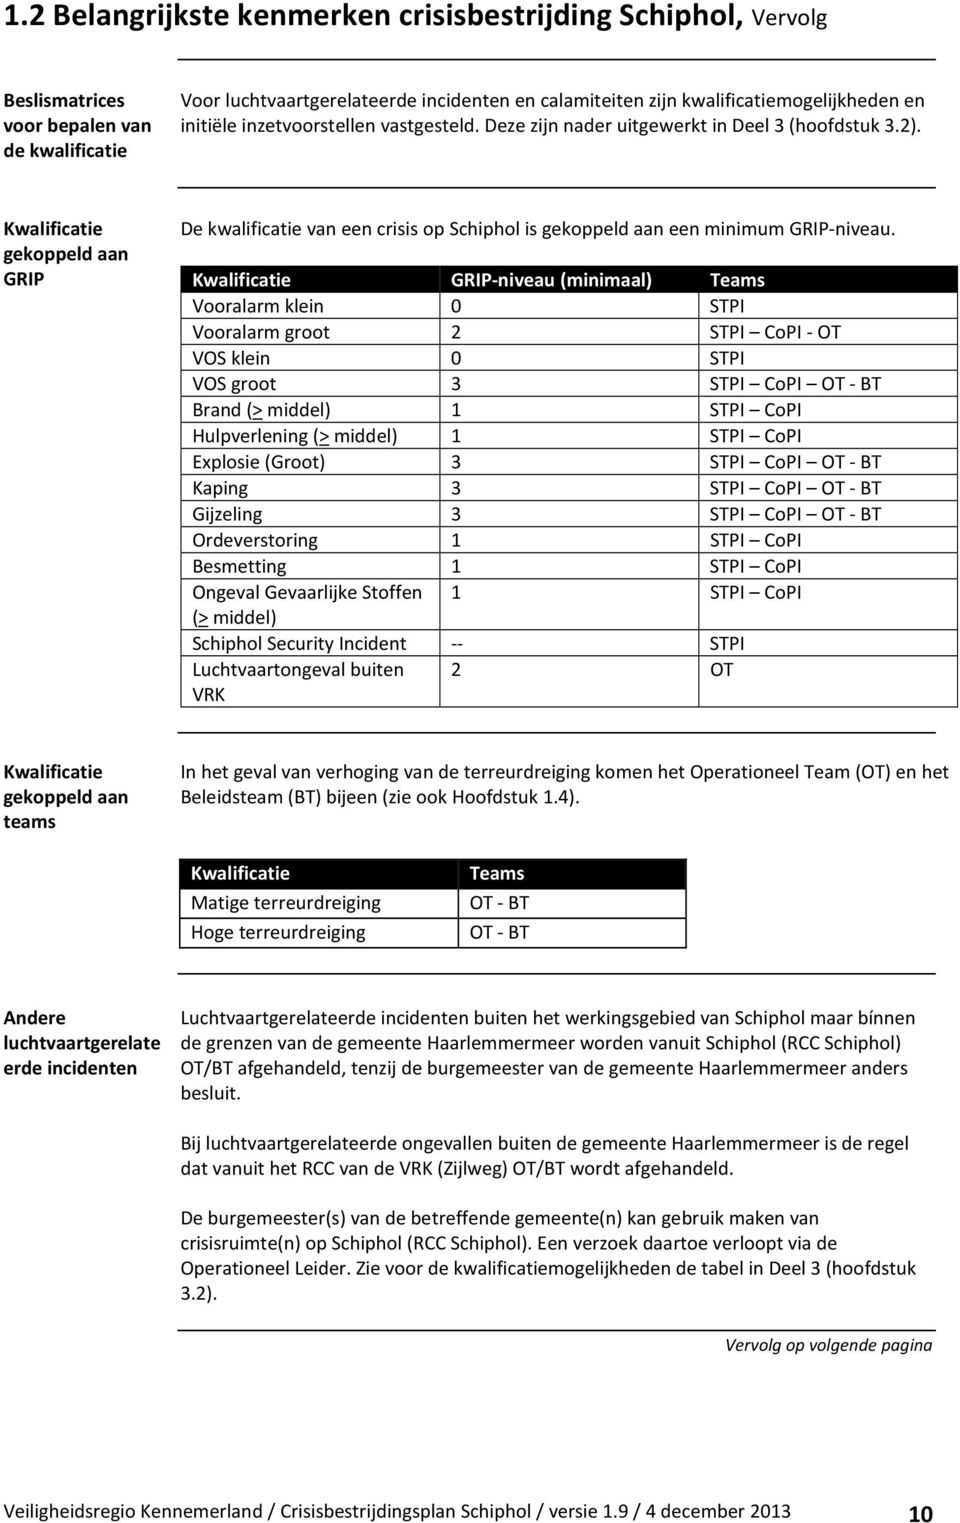 Kwalificatie gekoppeld aan GRIP De kwalificatie van een crisis op Schiphol is gekoppeld aan een minimum GRIP-niveau.